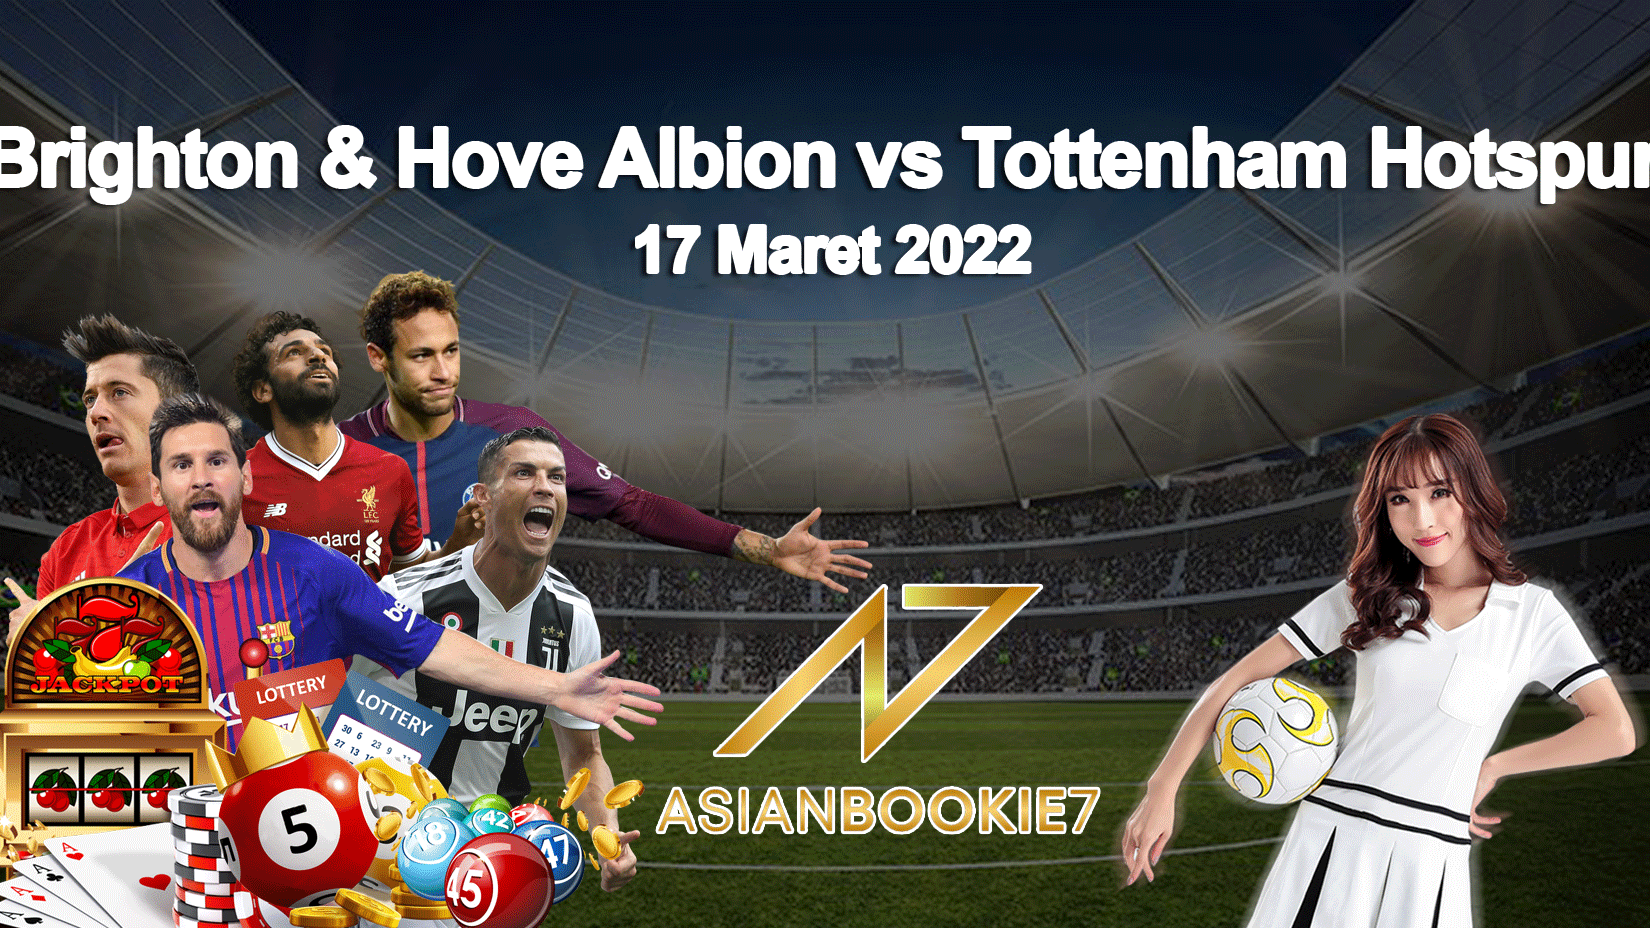 Prediksi-Brighton-&-Hove-Albion-vs-Tottenham-Hotspur-17-Maret-2022